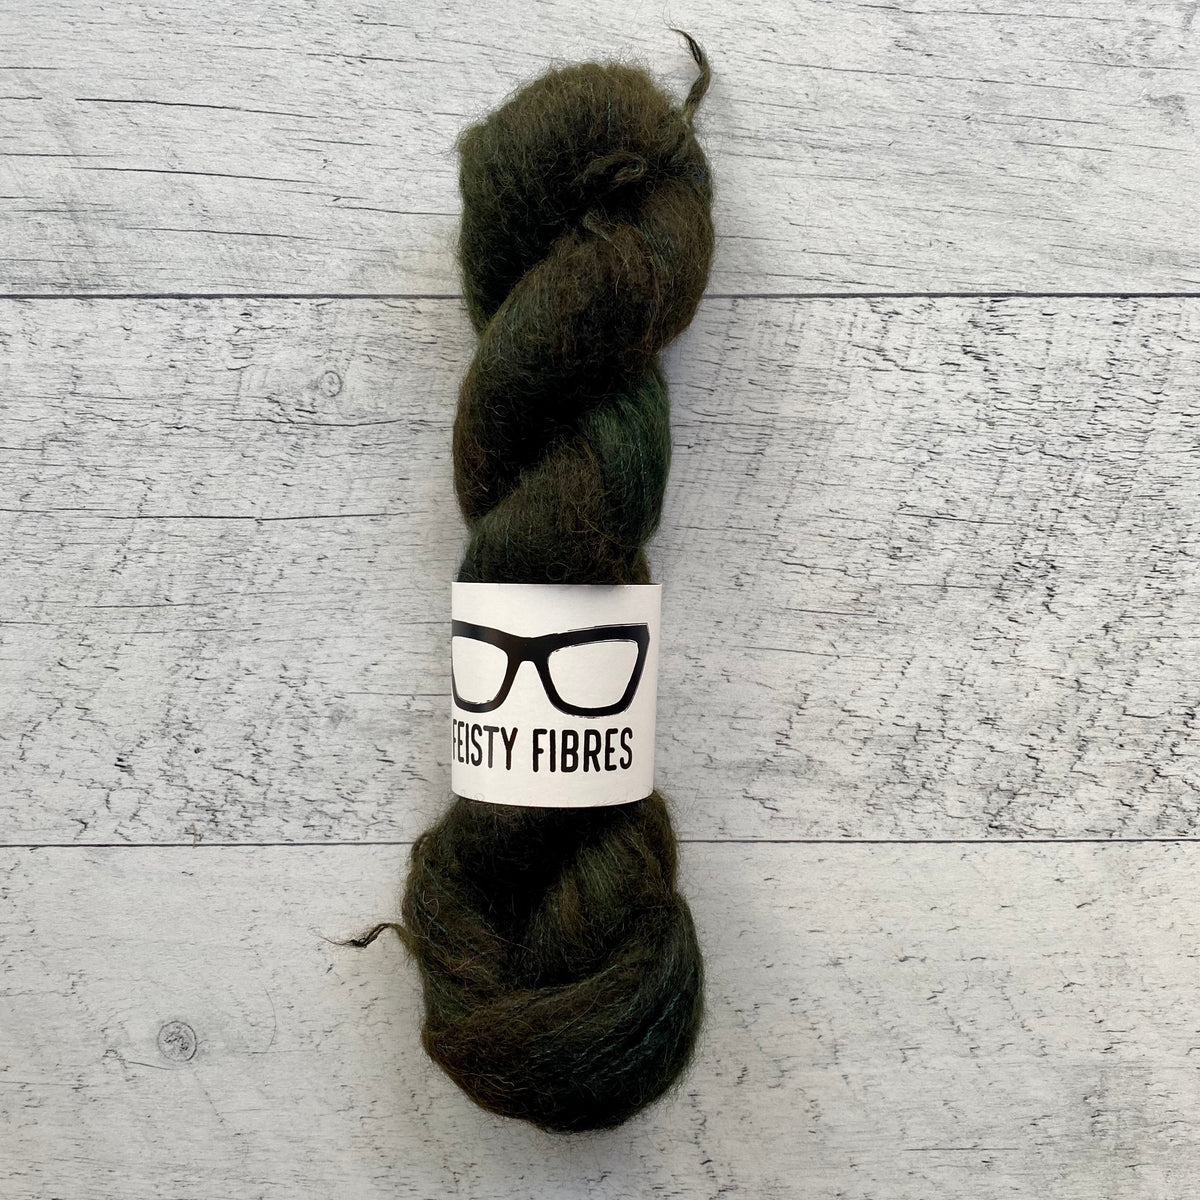 La soie une fibre royale pour le tricot